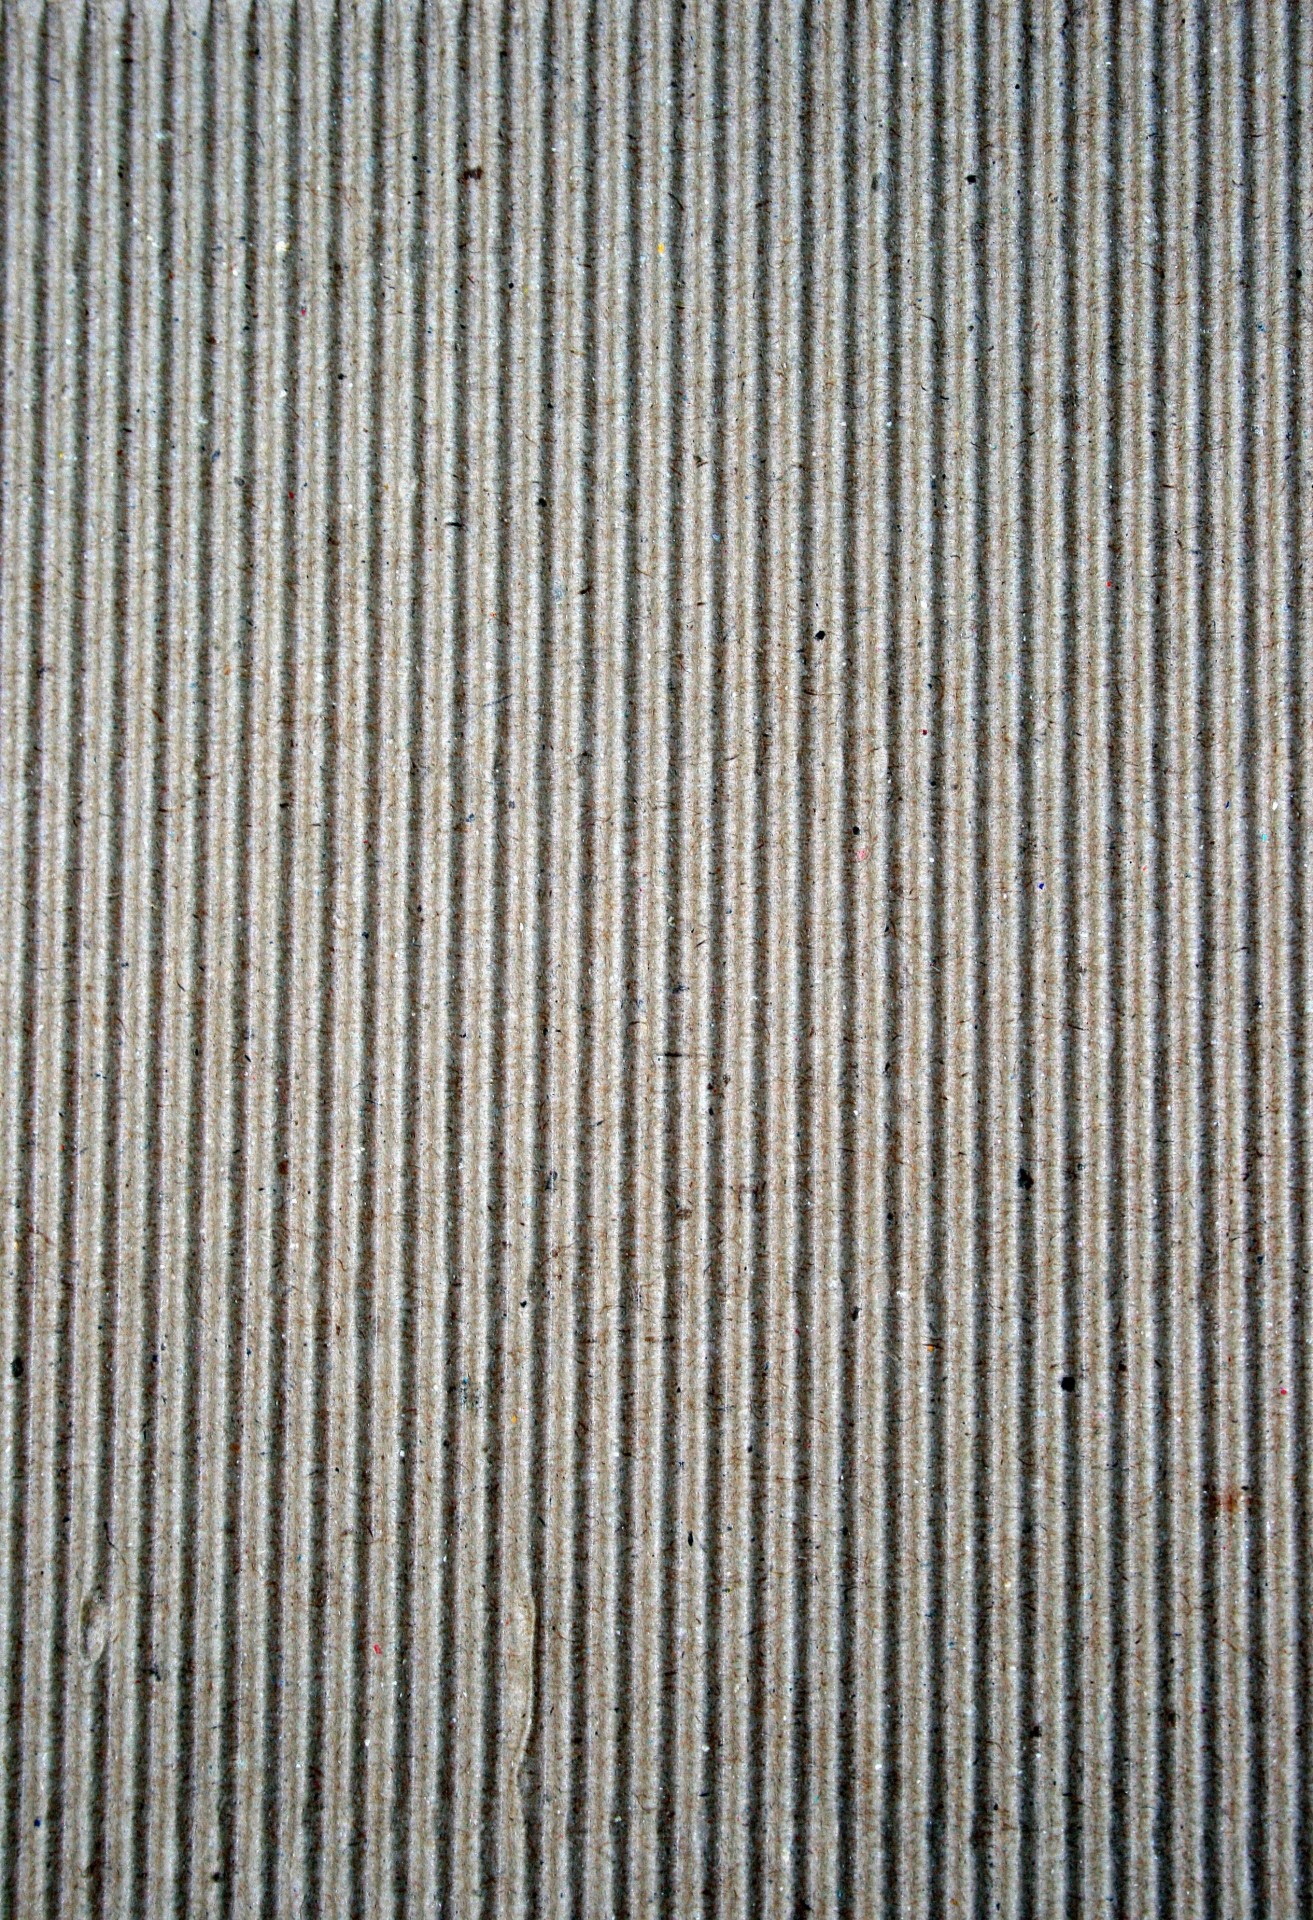 cardboard grooved corrugated cardboard free photo